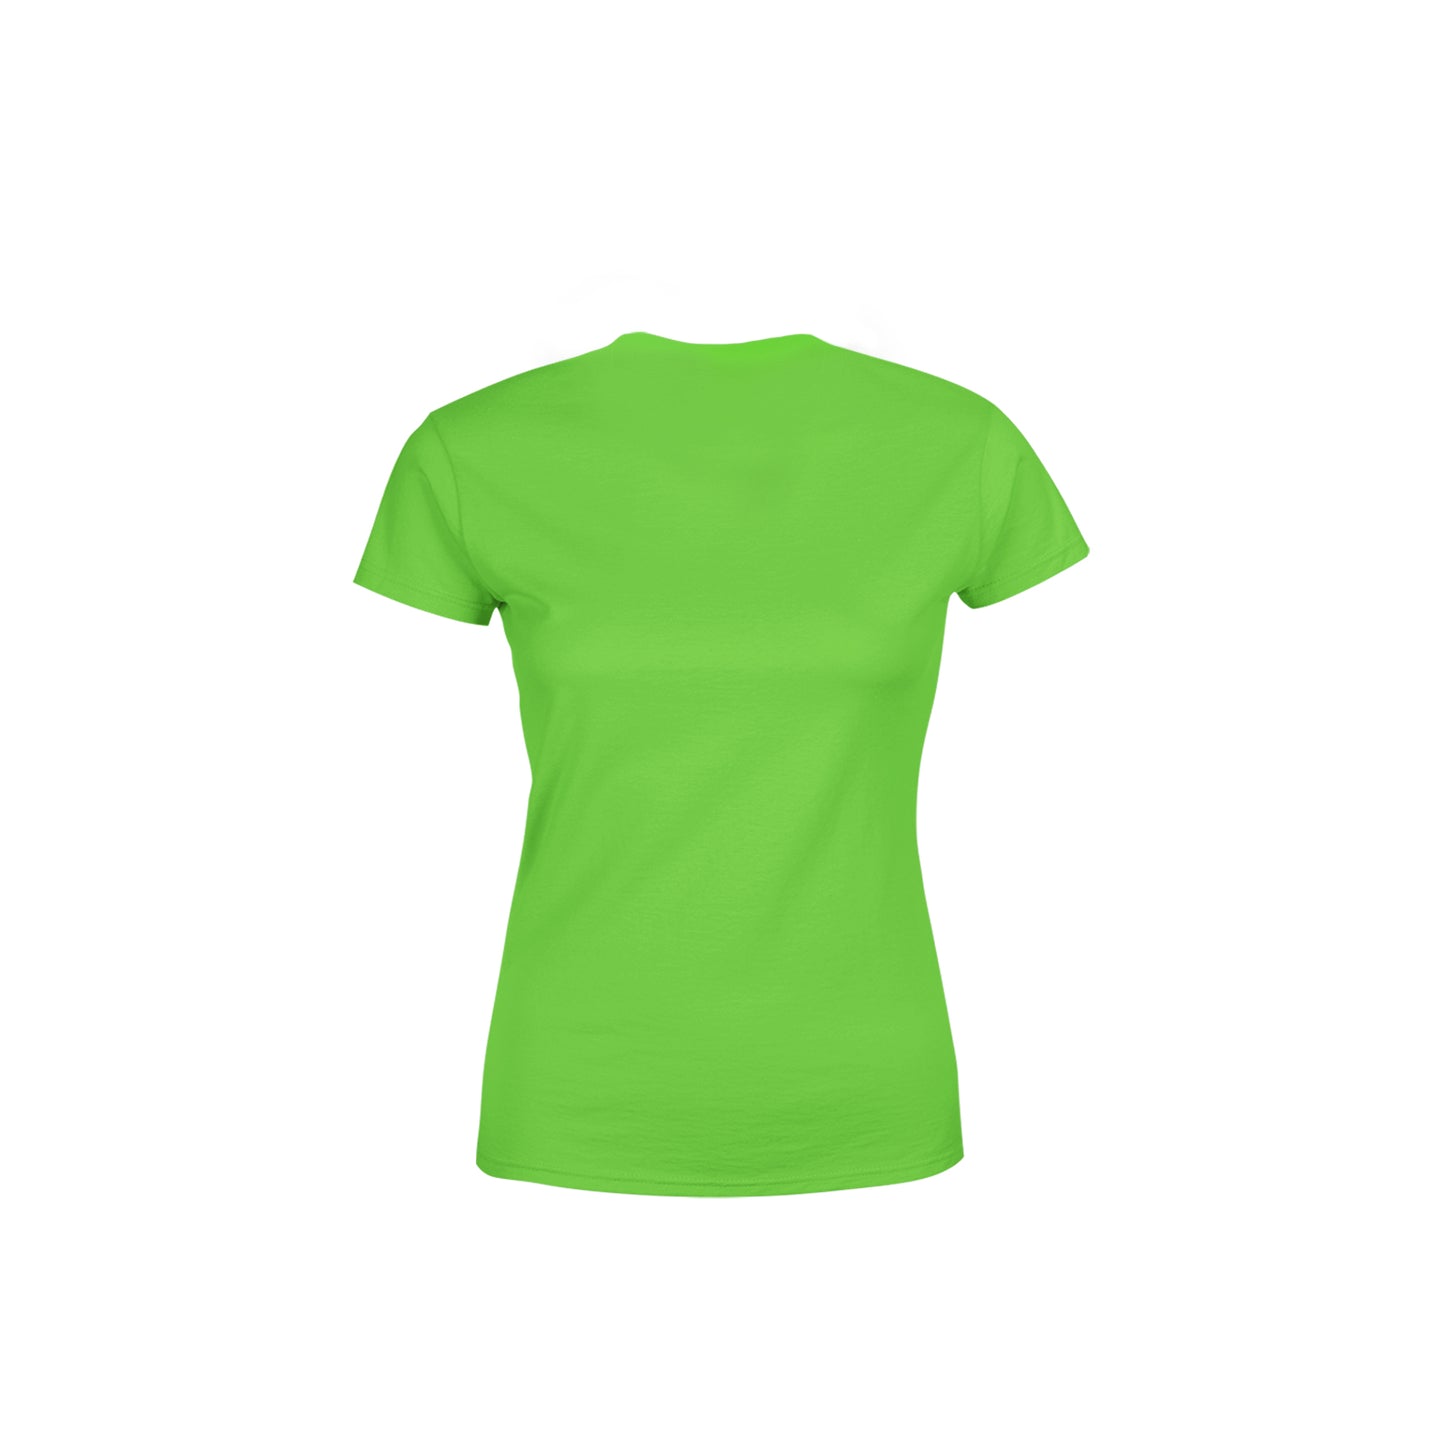 51 Number Women's T-Shirt (Liril Green)